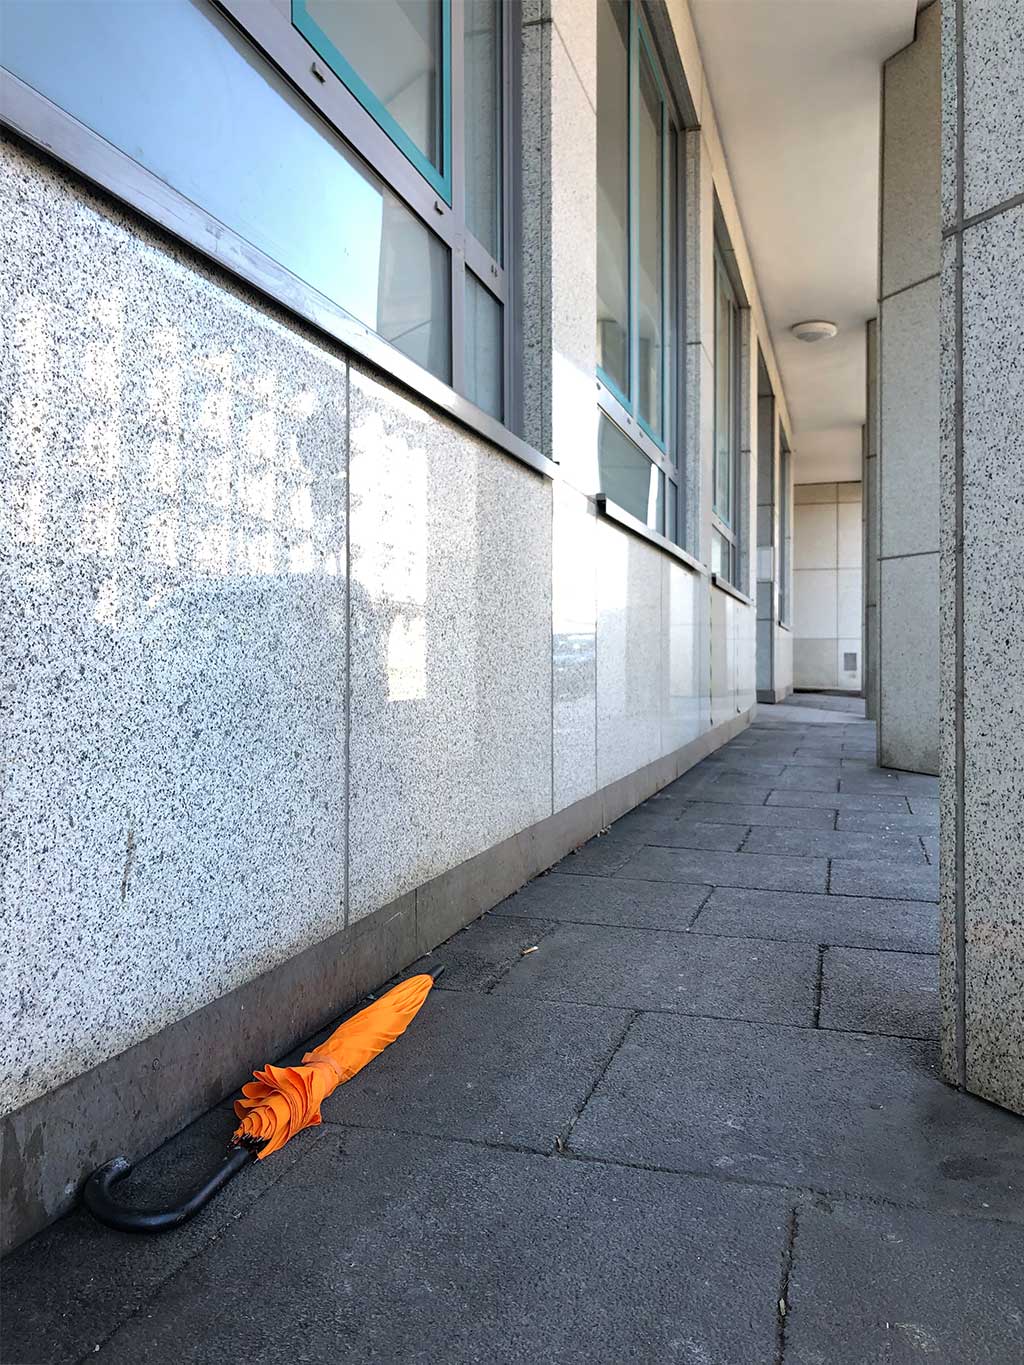 Orangefarbener Schirm auf dem Boden in Frankfurt